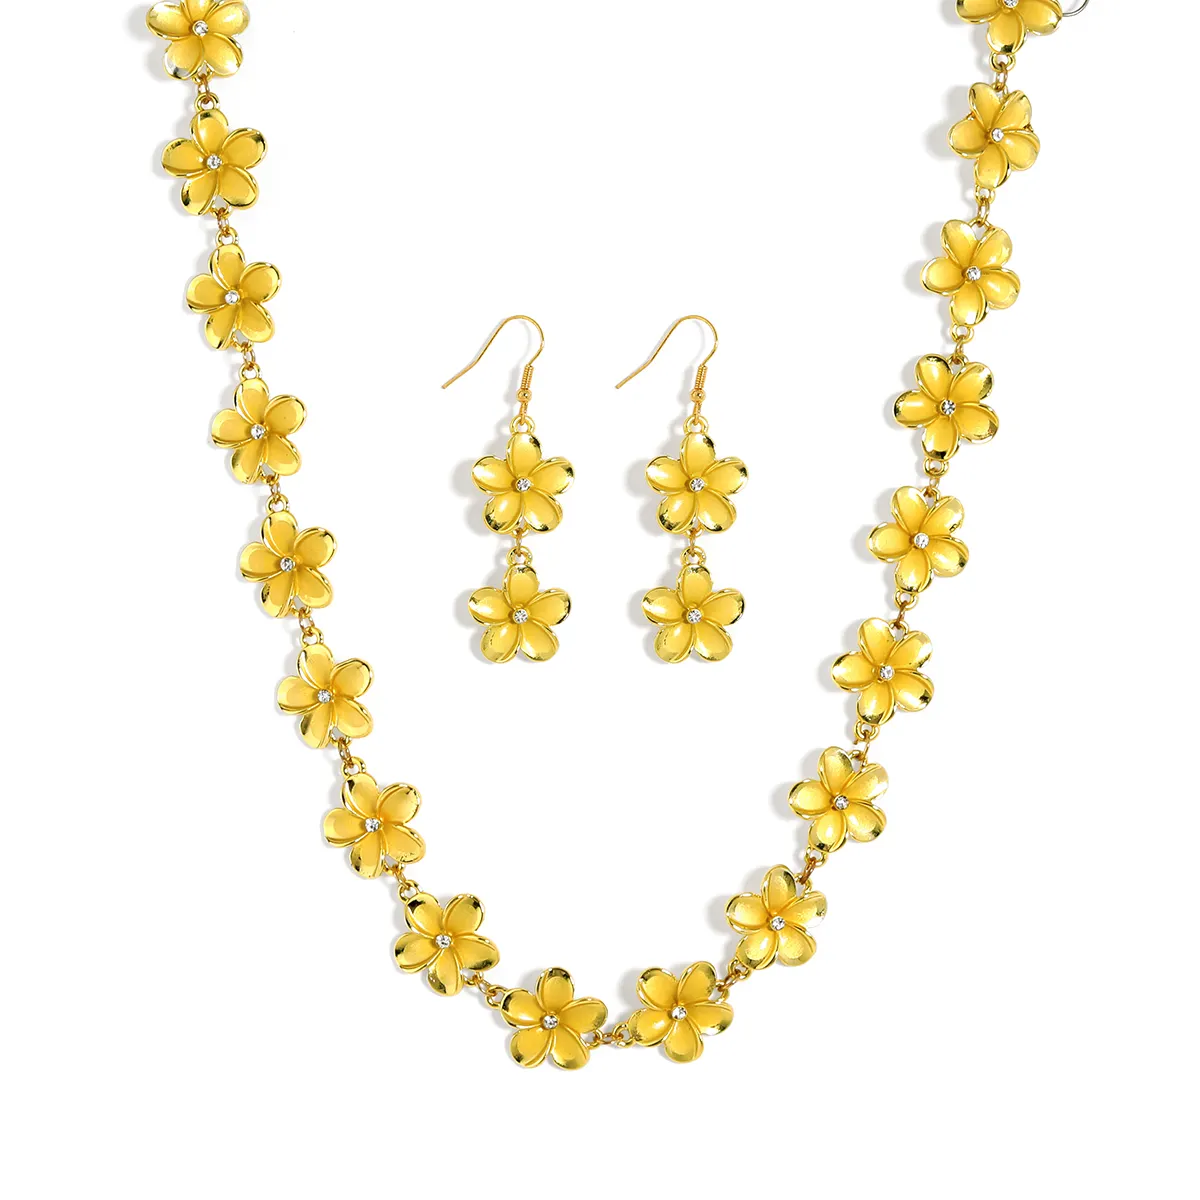 Hawaiian Samoa New Design Gold Plated Plumeria necklace earring bracelet flowerJewelry Set Women